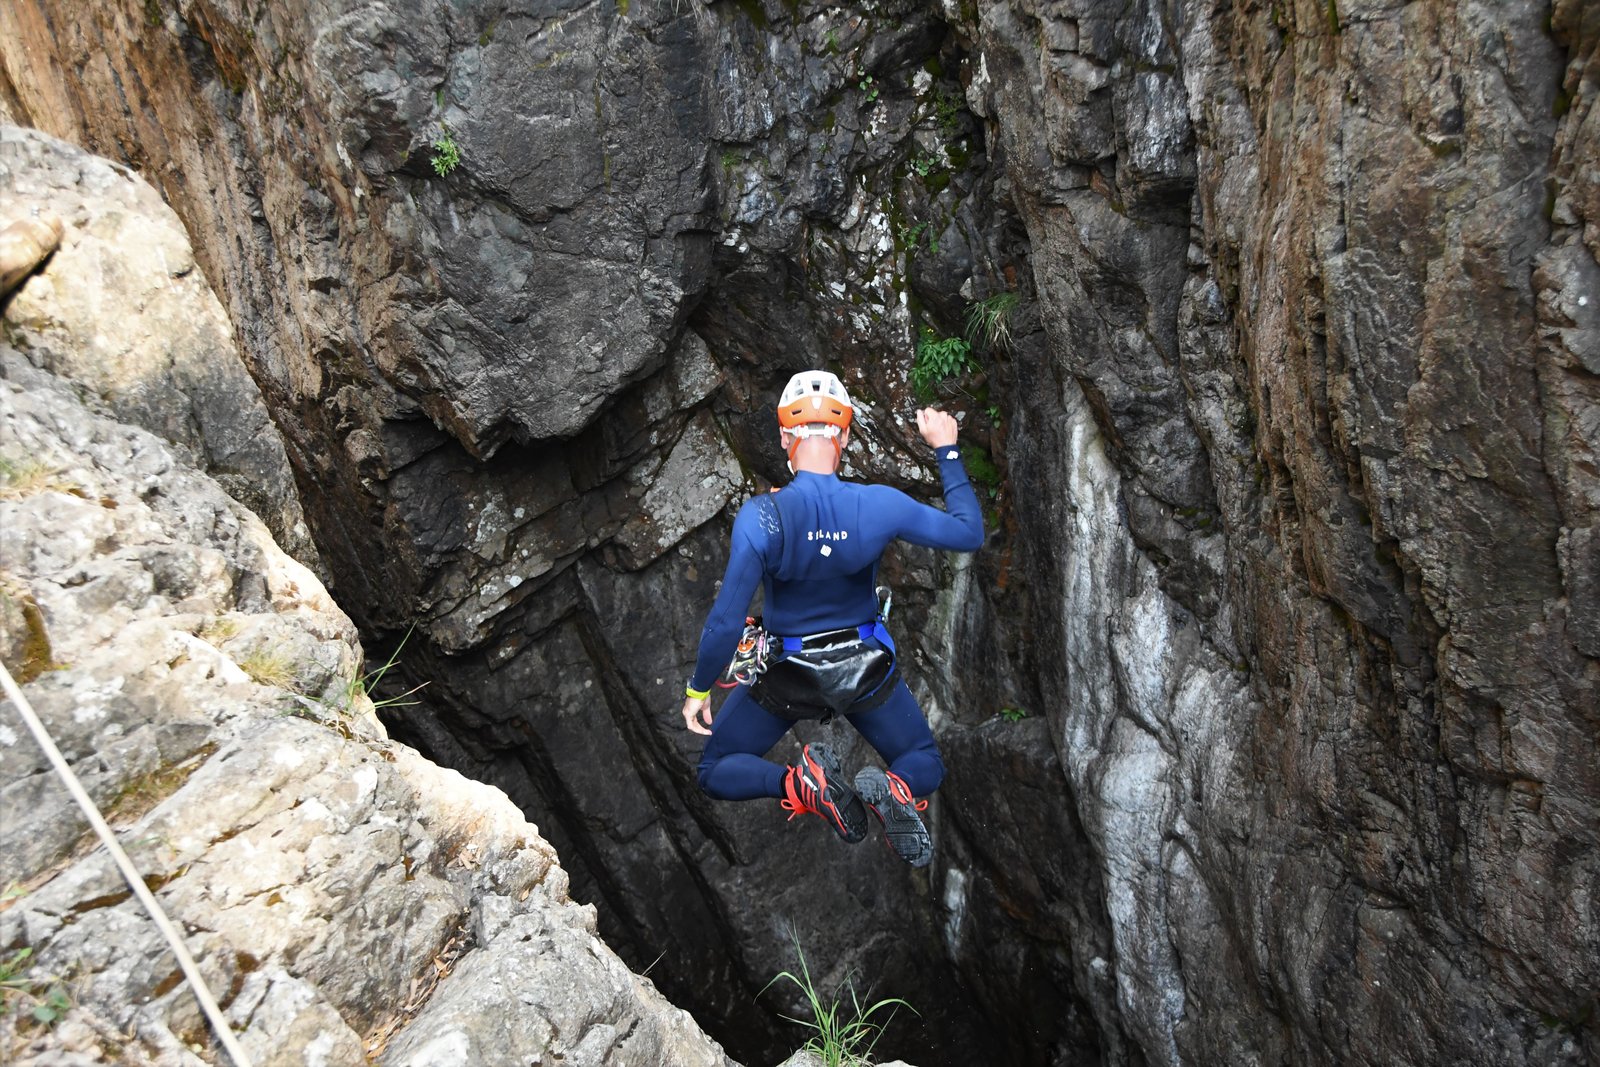 Person jumping into the Richiusa Canyon